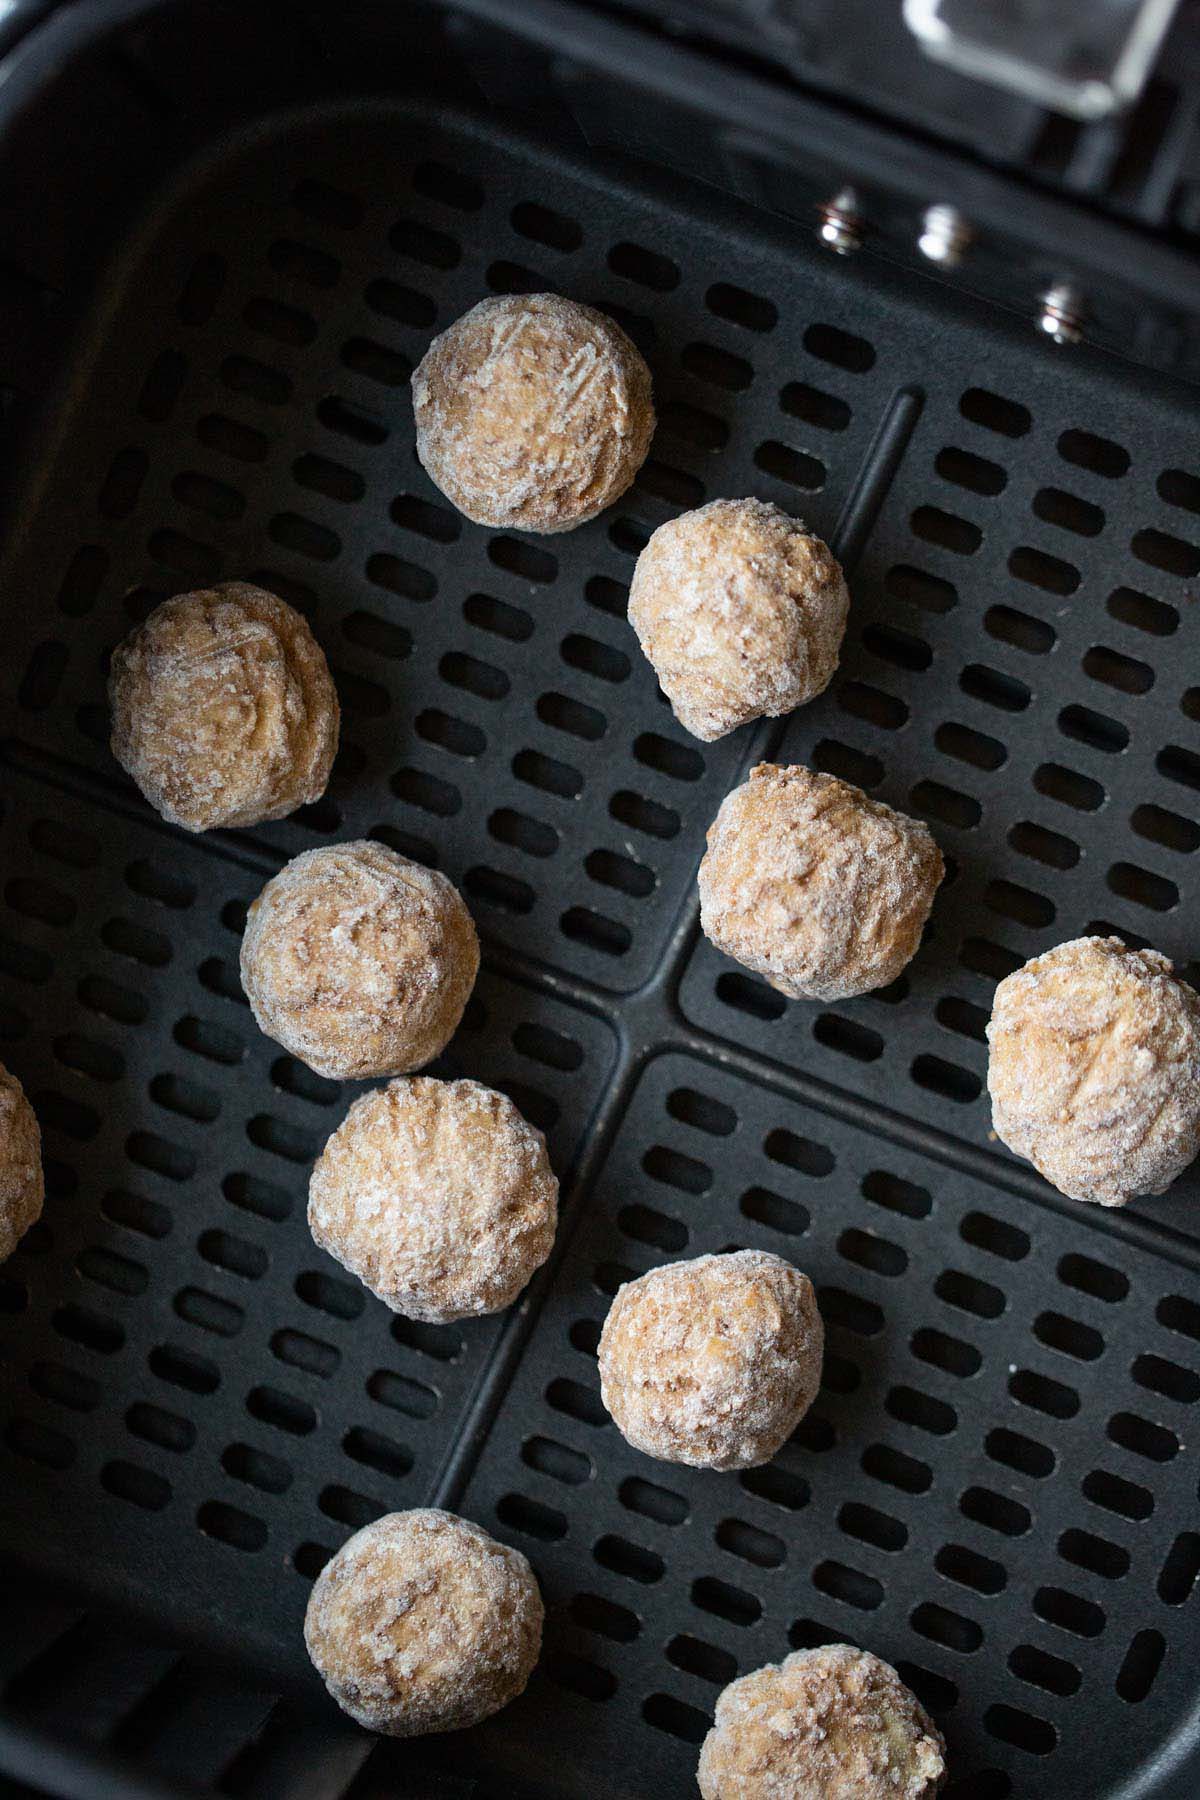 Frozen ikea meatballs in air fryer basket.